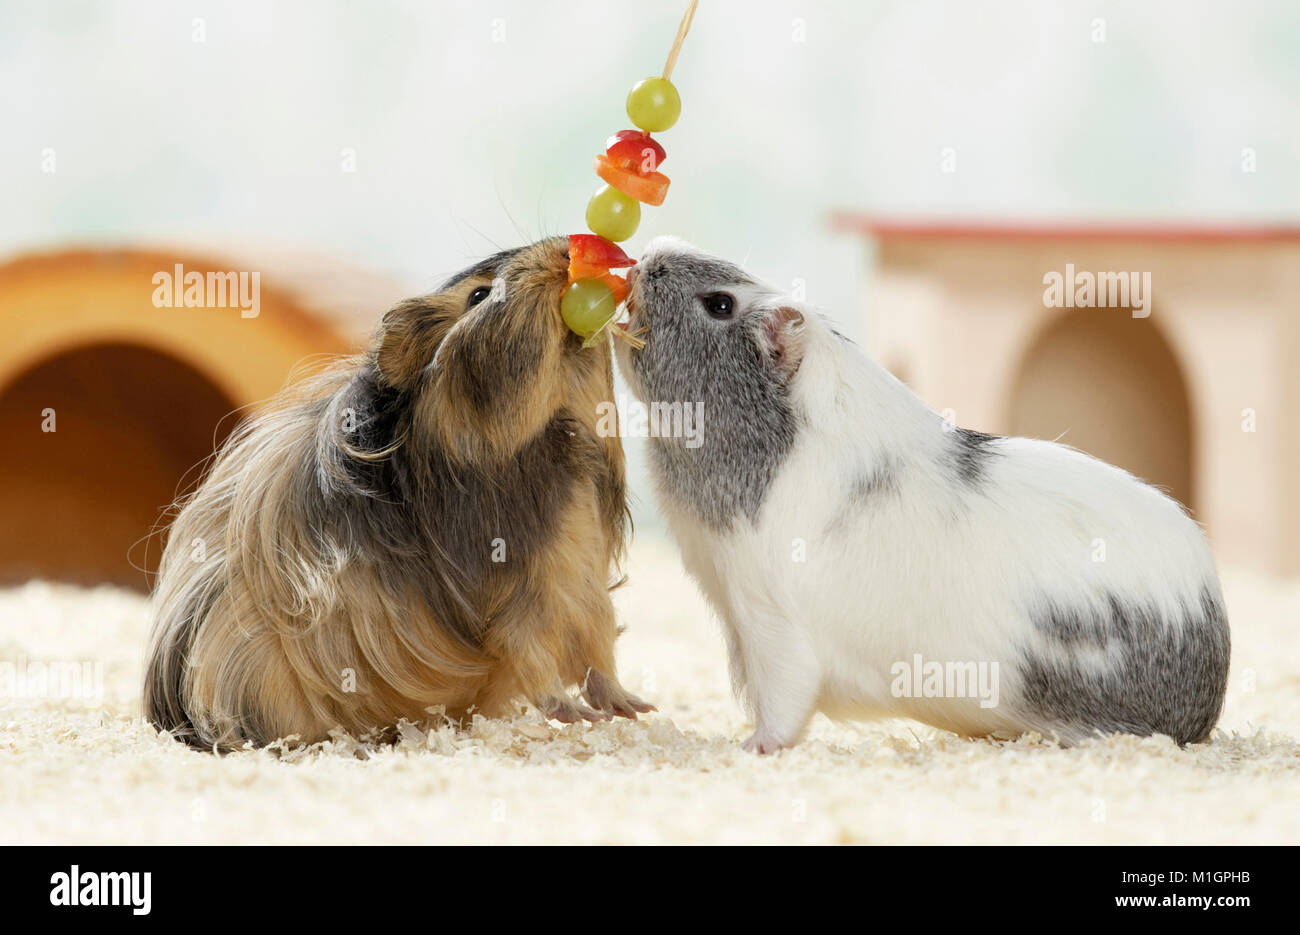 Cobaye, Cavie. Deux adultes (à poil lisse et poil long) manger des fruits et légumes sur une brochette. Allemagne Banque D'Images